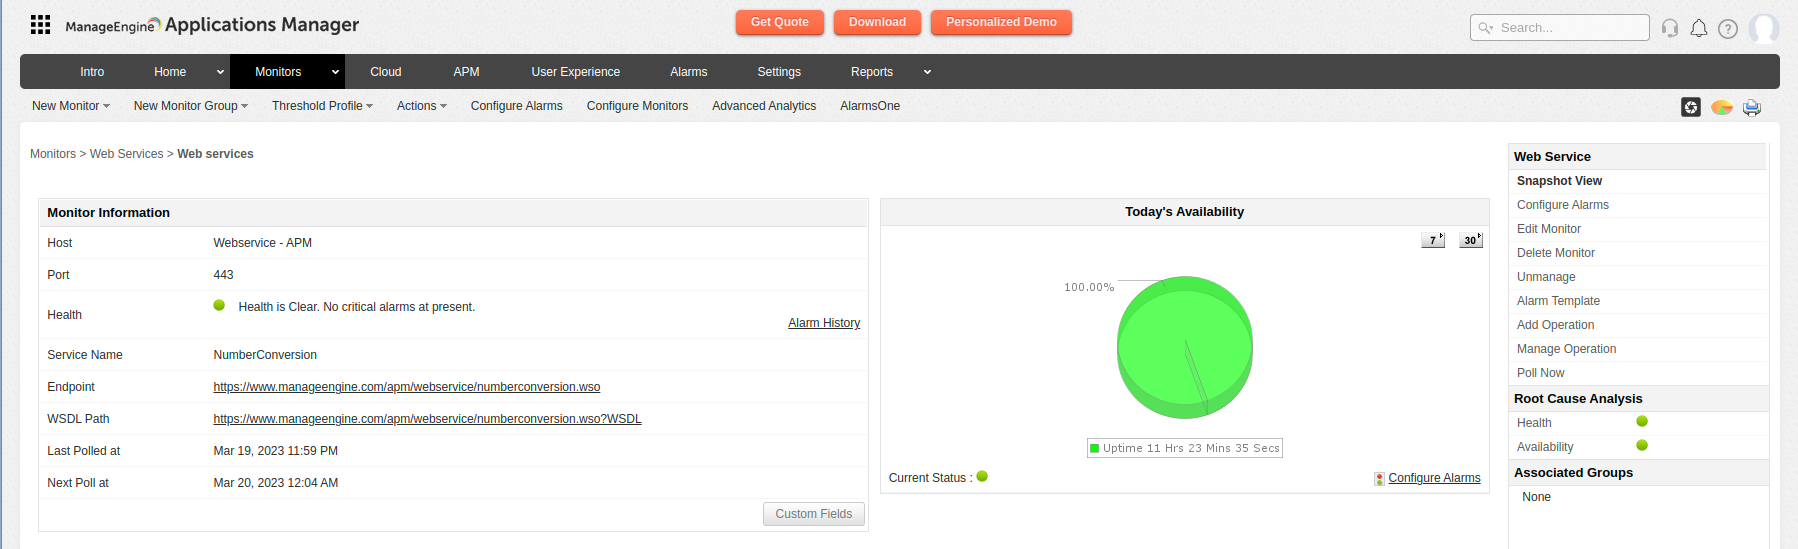 Dashboard de monitoreo de información para servicios web - Applications Manager